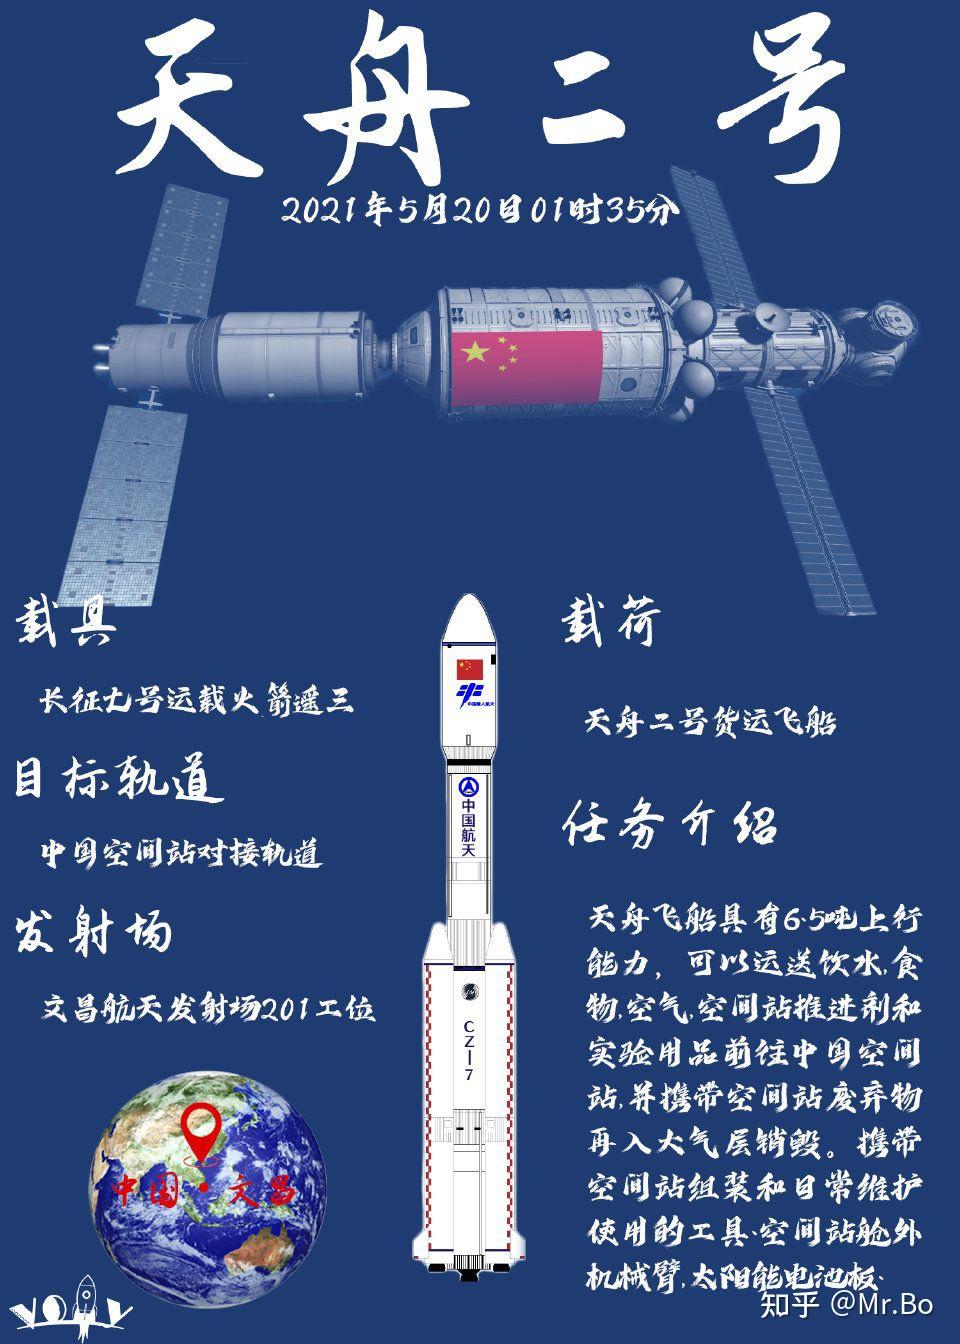 中国天舟二号货运飞船 5 月 29 日发射成功,对中国空间站的建设有哪些